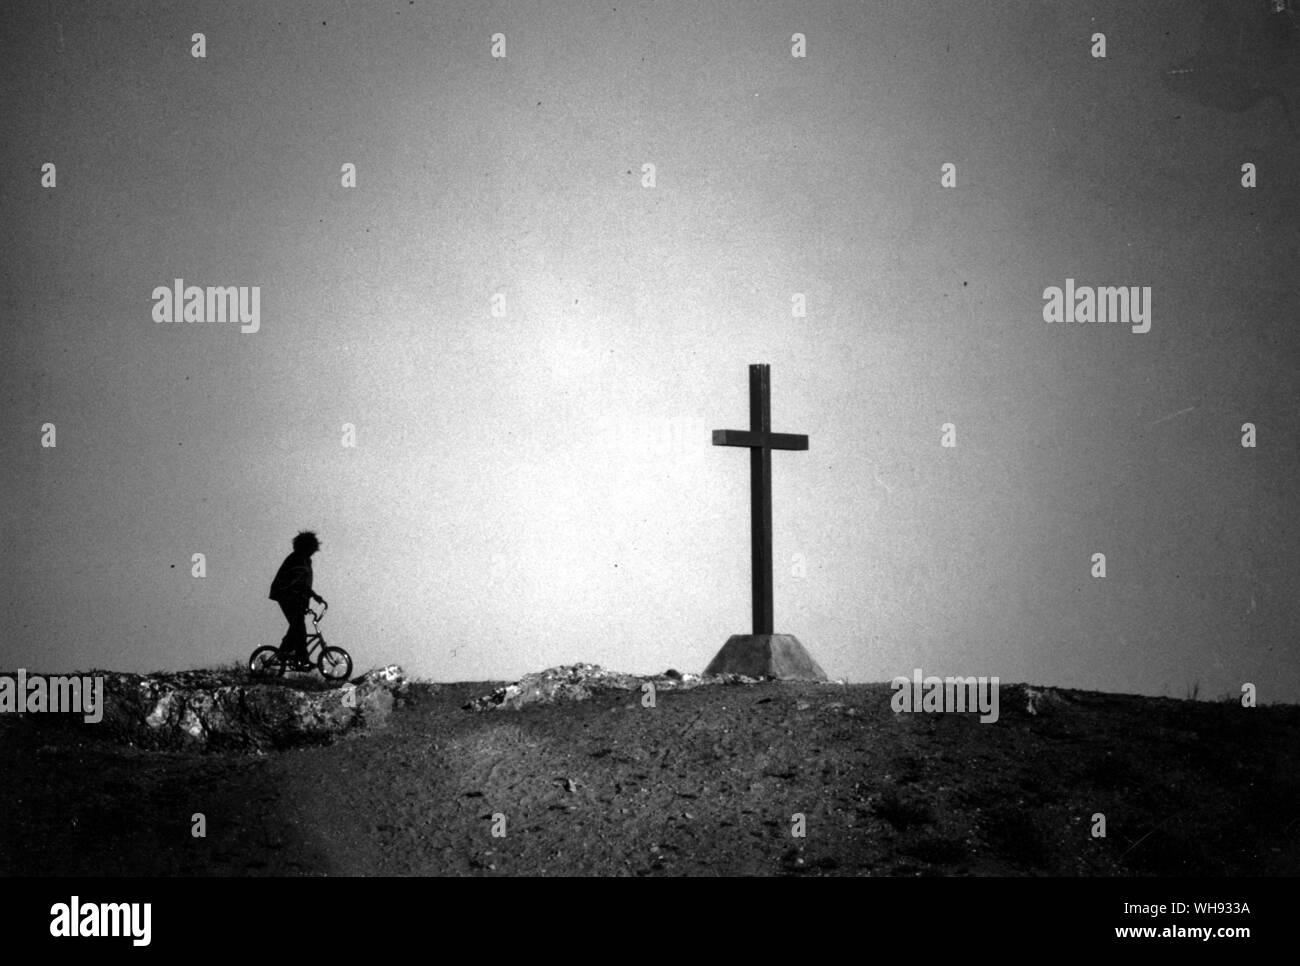 Bambini aborigeni sulla bici accanto a croce a Hermannsburg missione storica impresa luterana Foto Stock